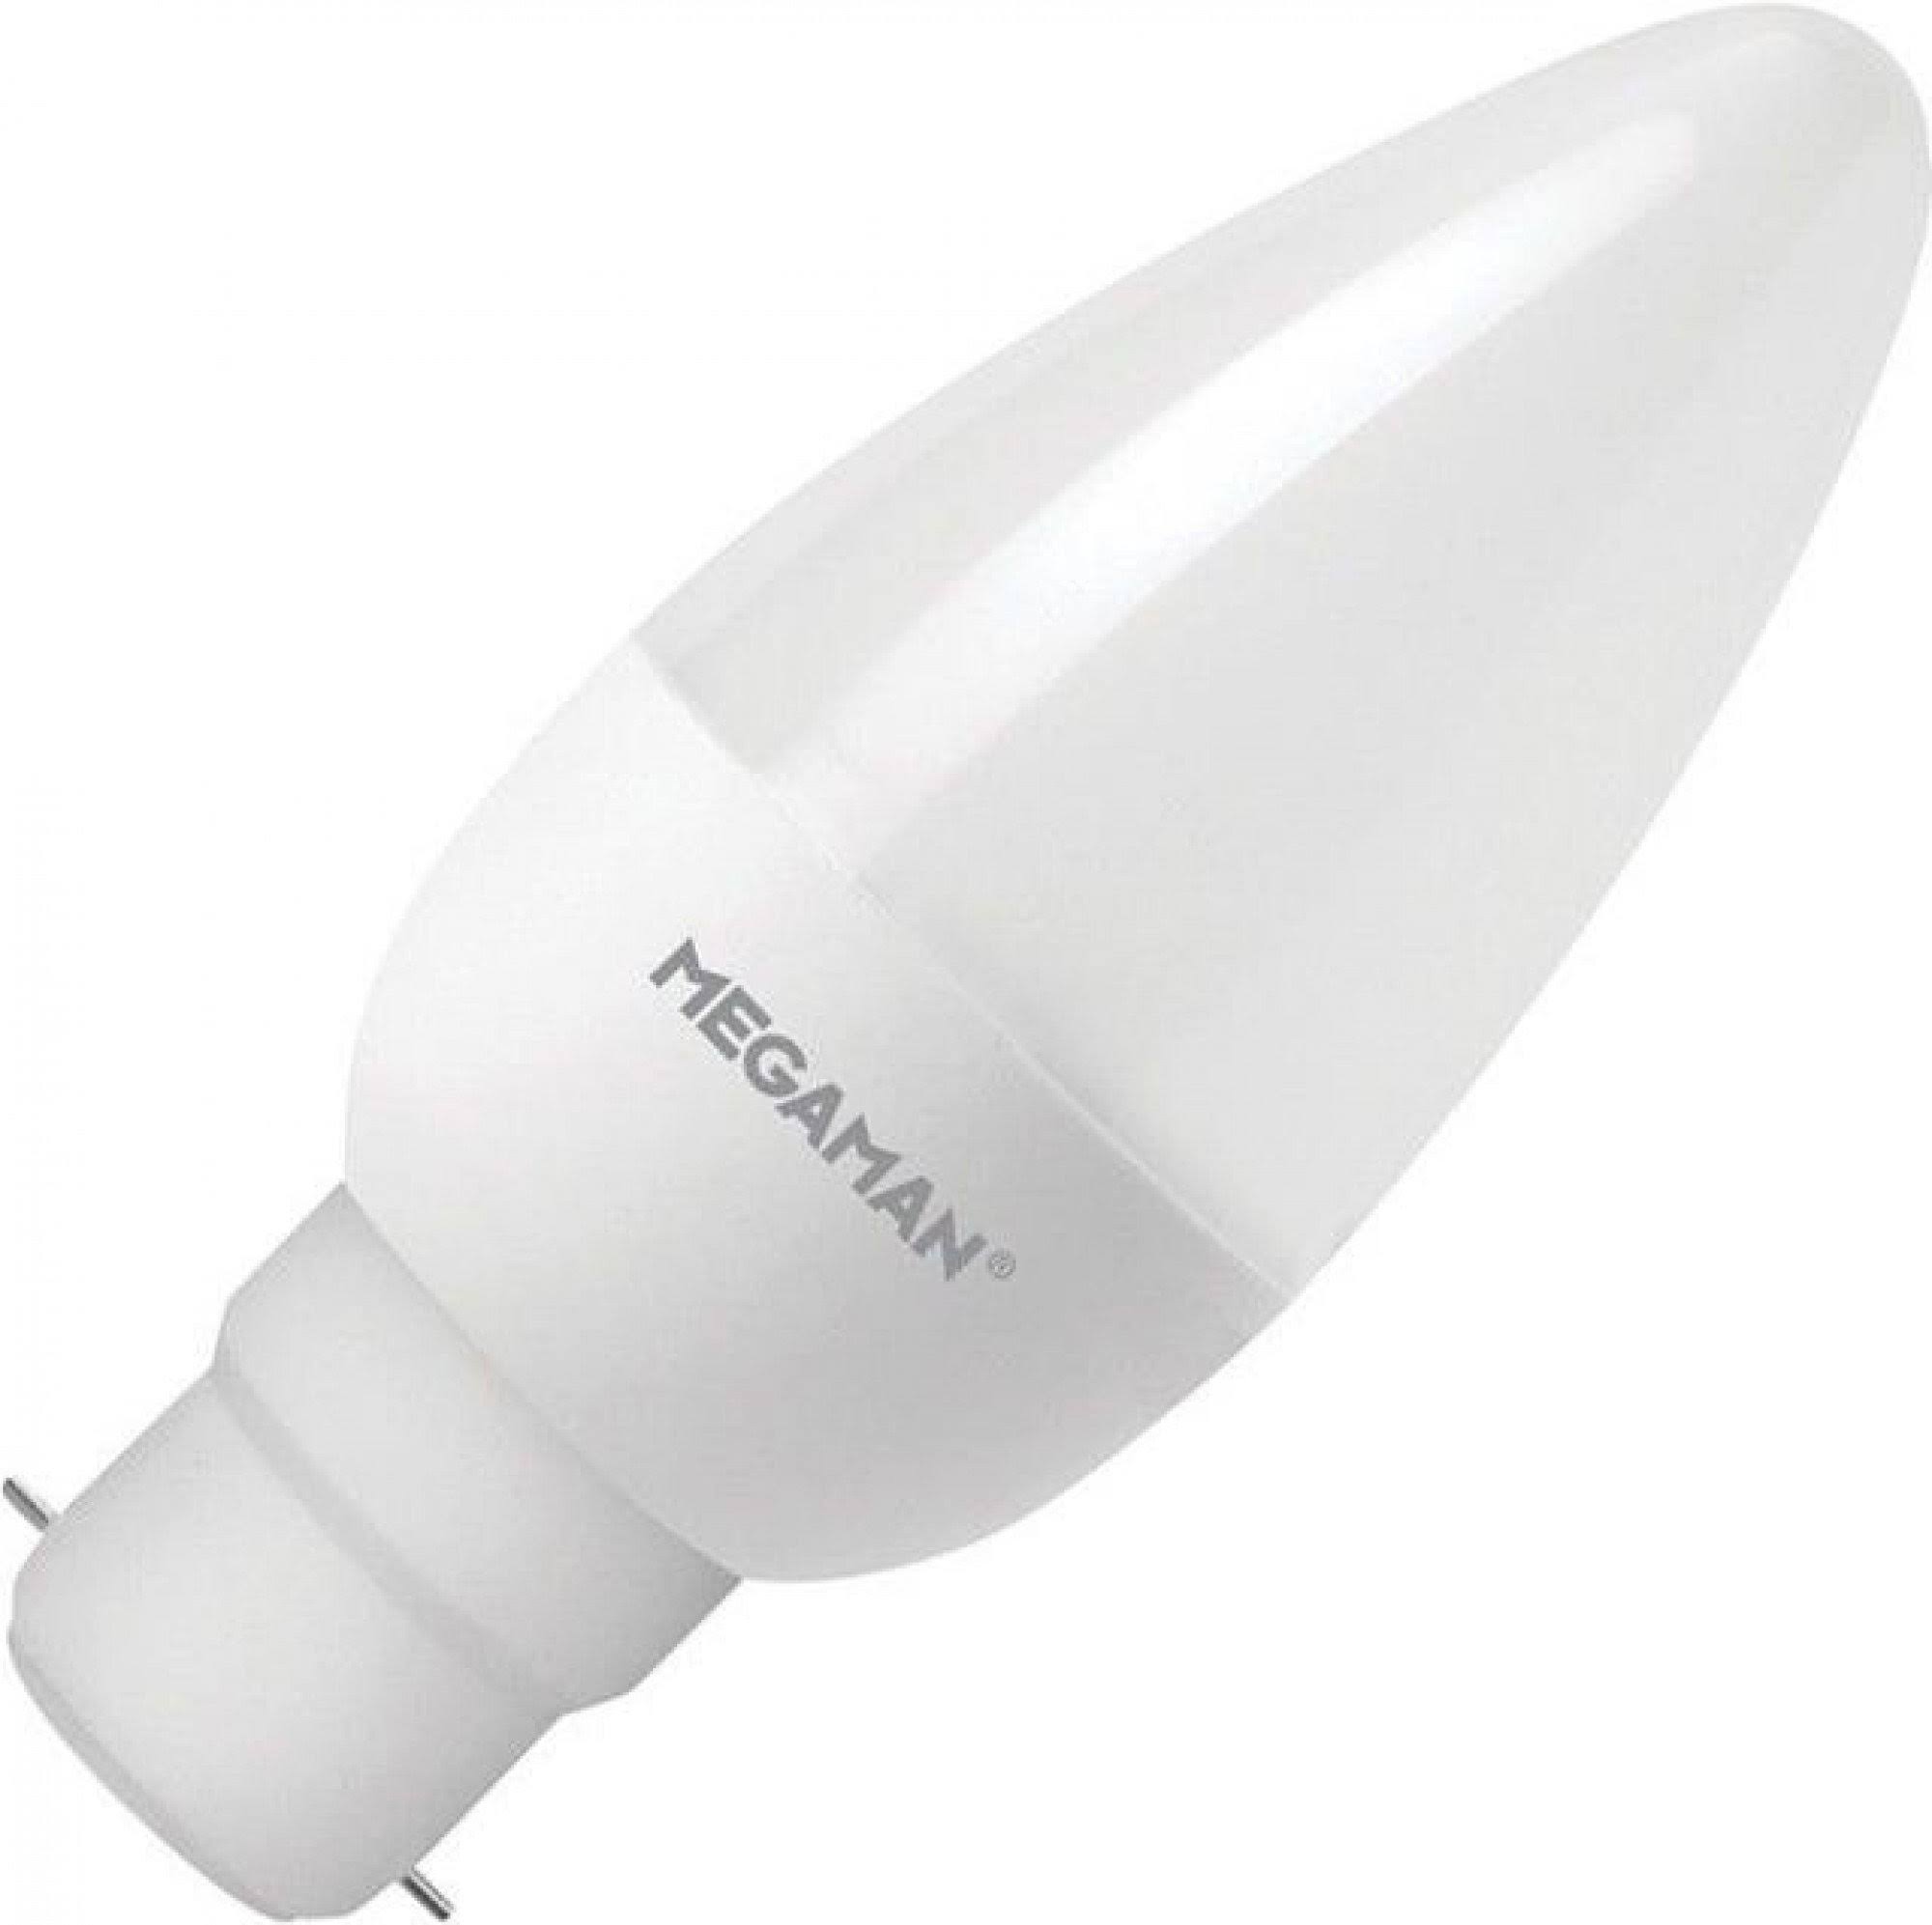 Megaman Eco LED Candle Bulb - Warm White, 3.5w